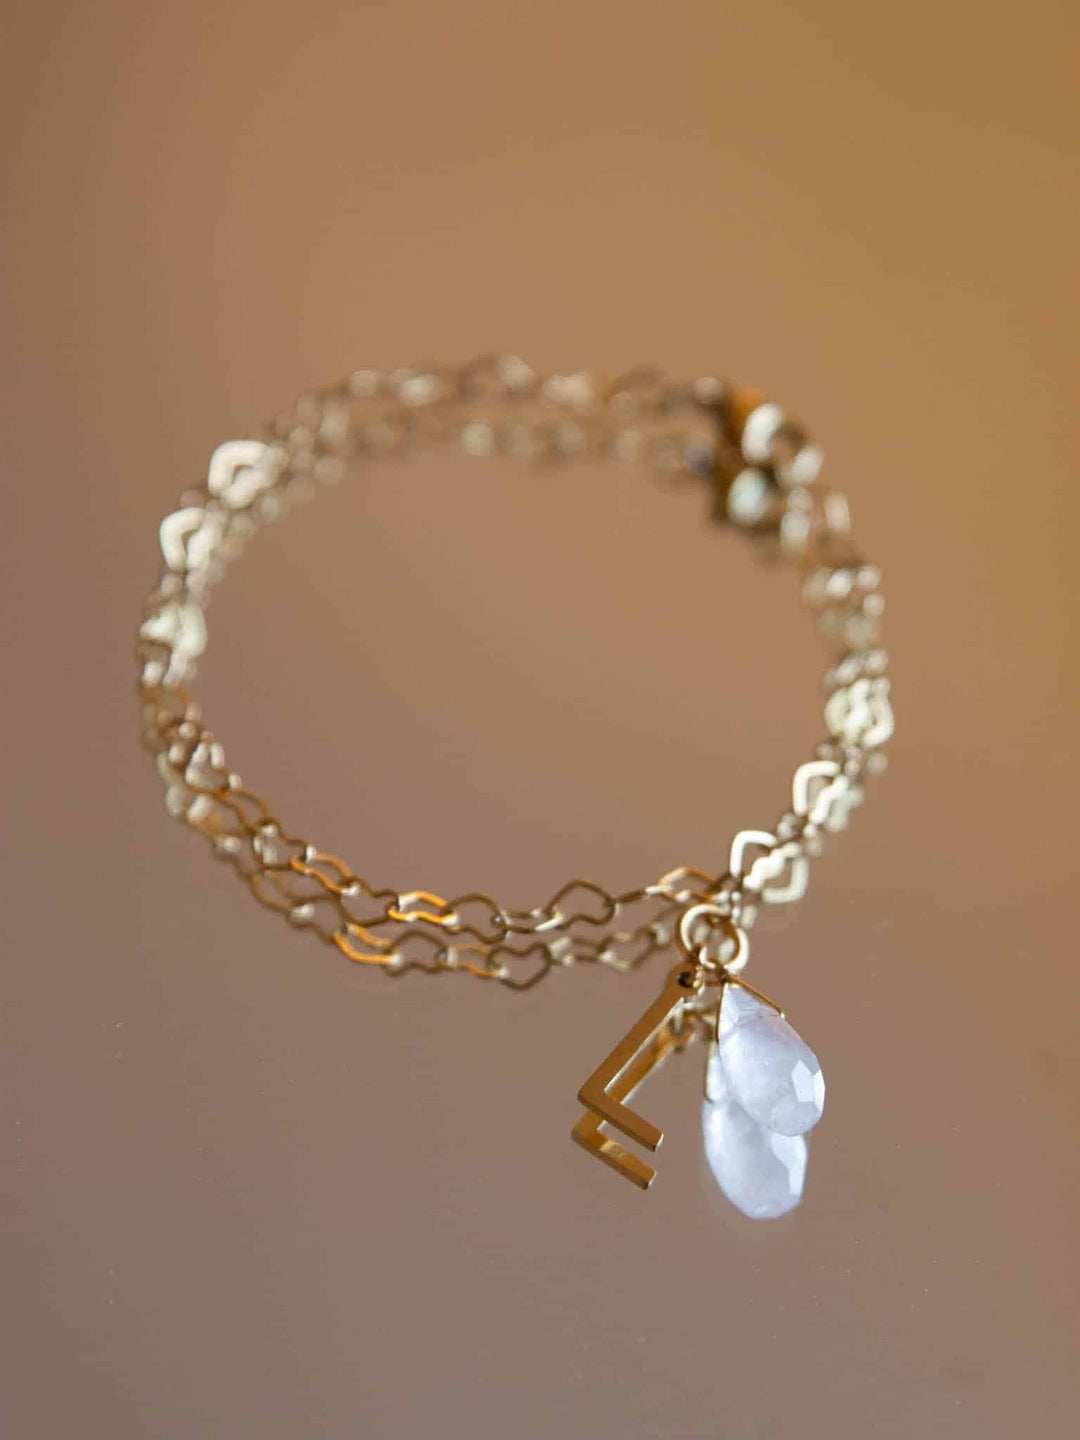 Personalized Connected Hearts Bracelet - Armkette (waterproof) - Karneol